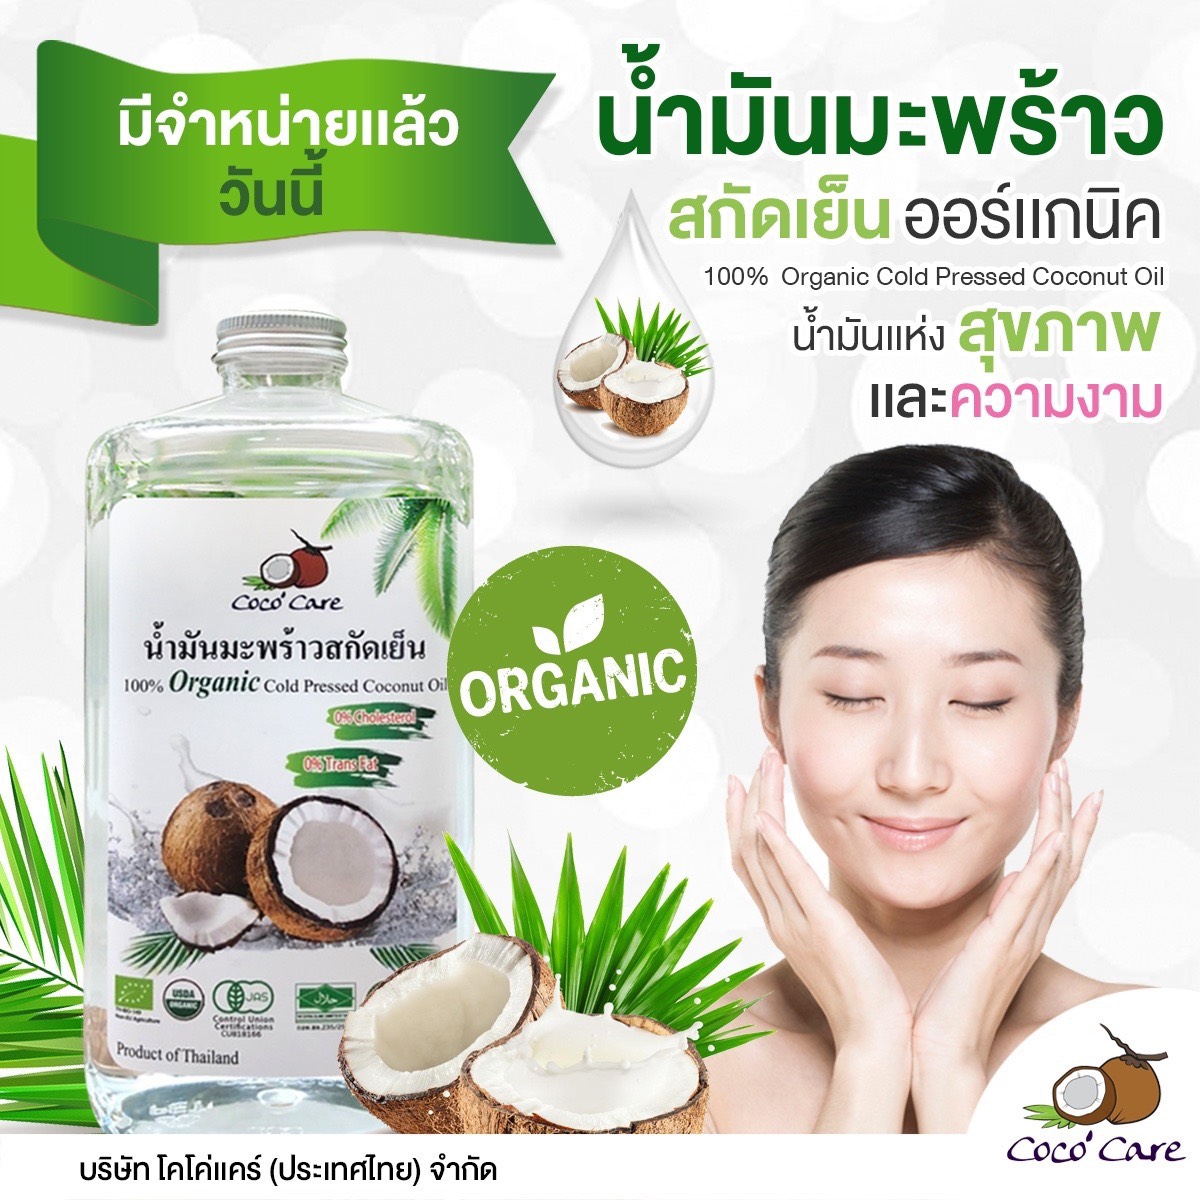 น้ำมันมะพร้าวสกัดเย็นออแกนิค 100 Coco ‘care Organic Cold Pressed Coconut Oil 500 Ml Th